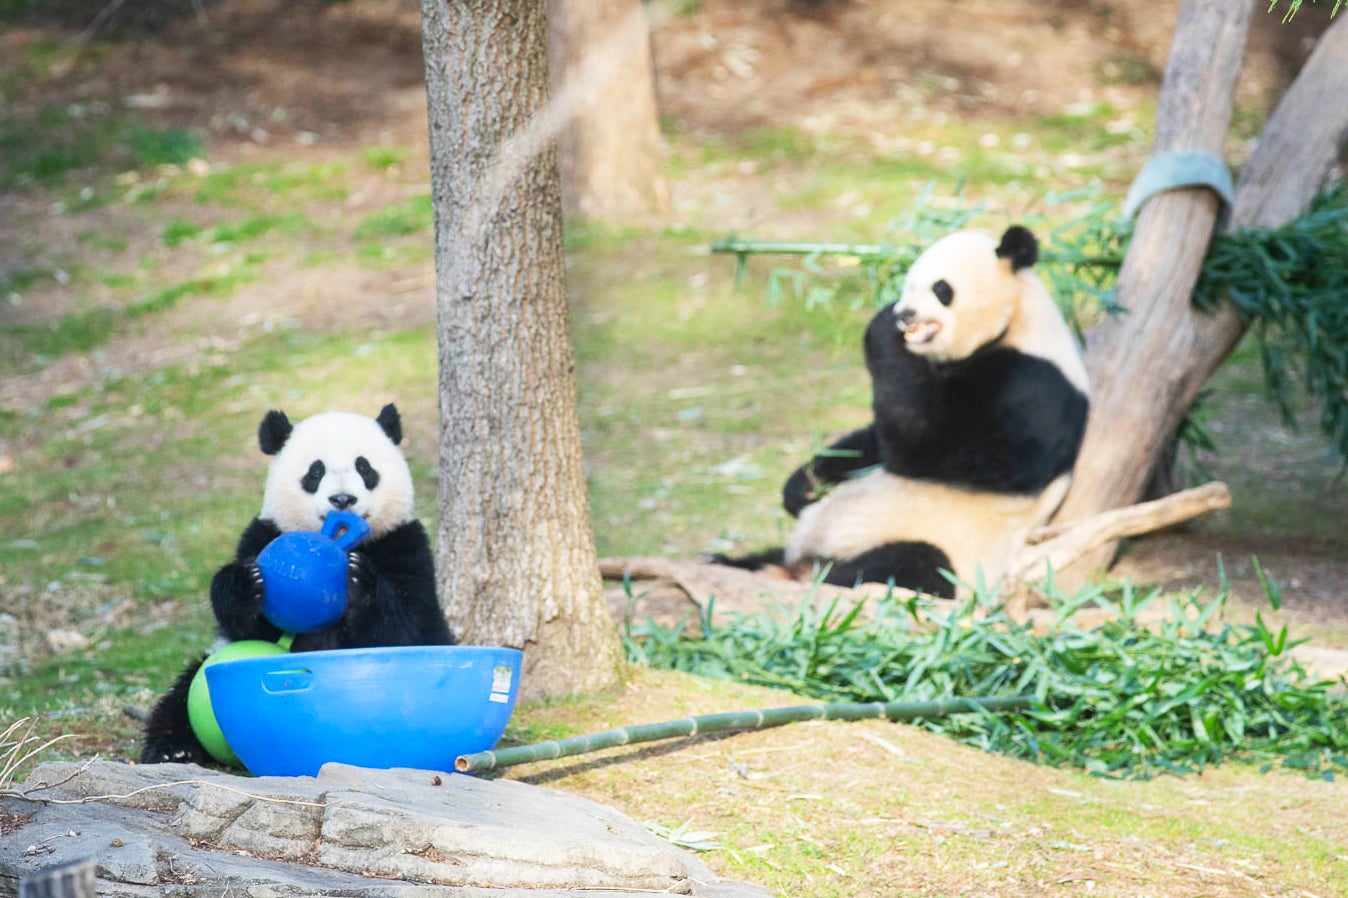 Giant panda cub Xiao Qi Ji plays with an enrichment jolly ball while his mother, Mei Xiang, eats bamboo nearby.